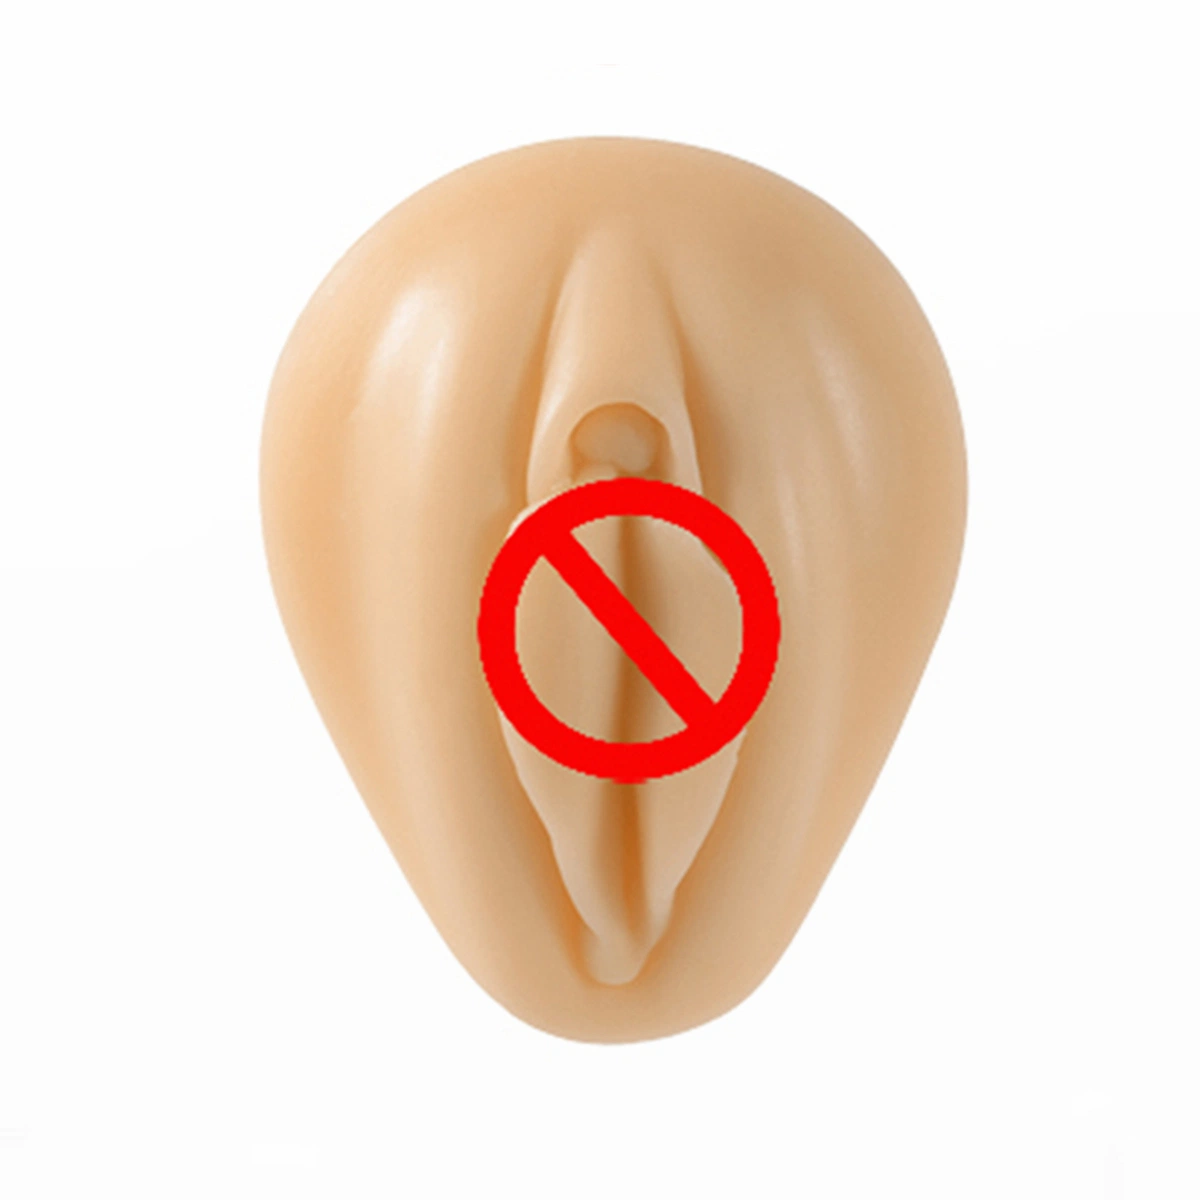 Exercice de perçage nez oreille pénis vagin langue lèvre oeil mamelon Modèle en silicone pour parties de corps humain Navel